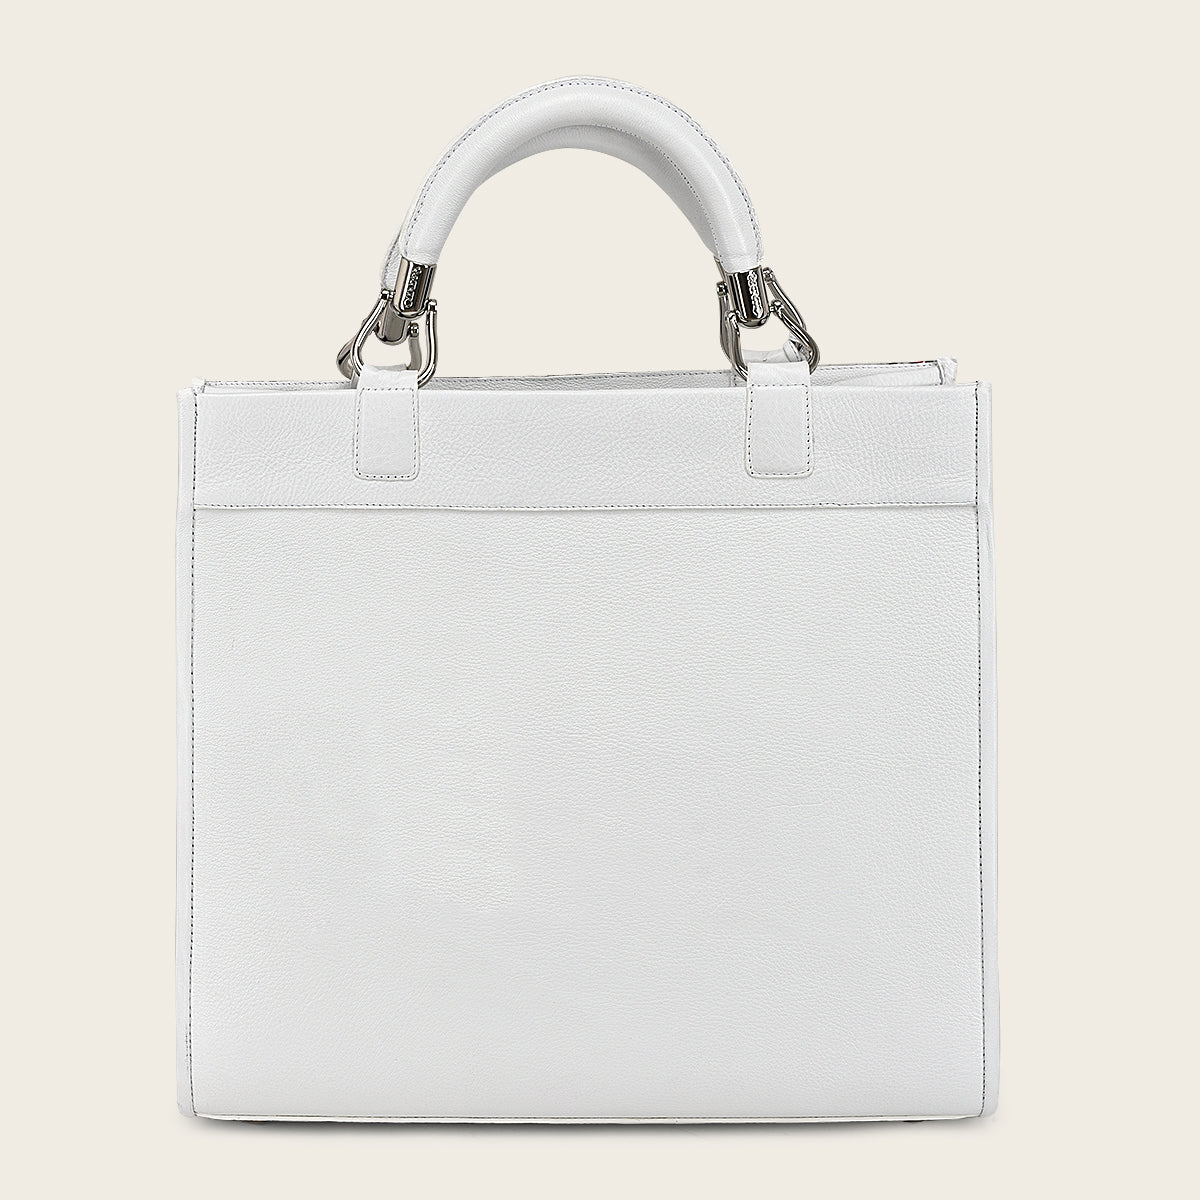 Full exotic white leather handbag